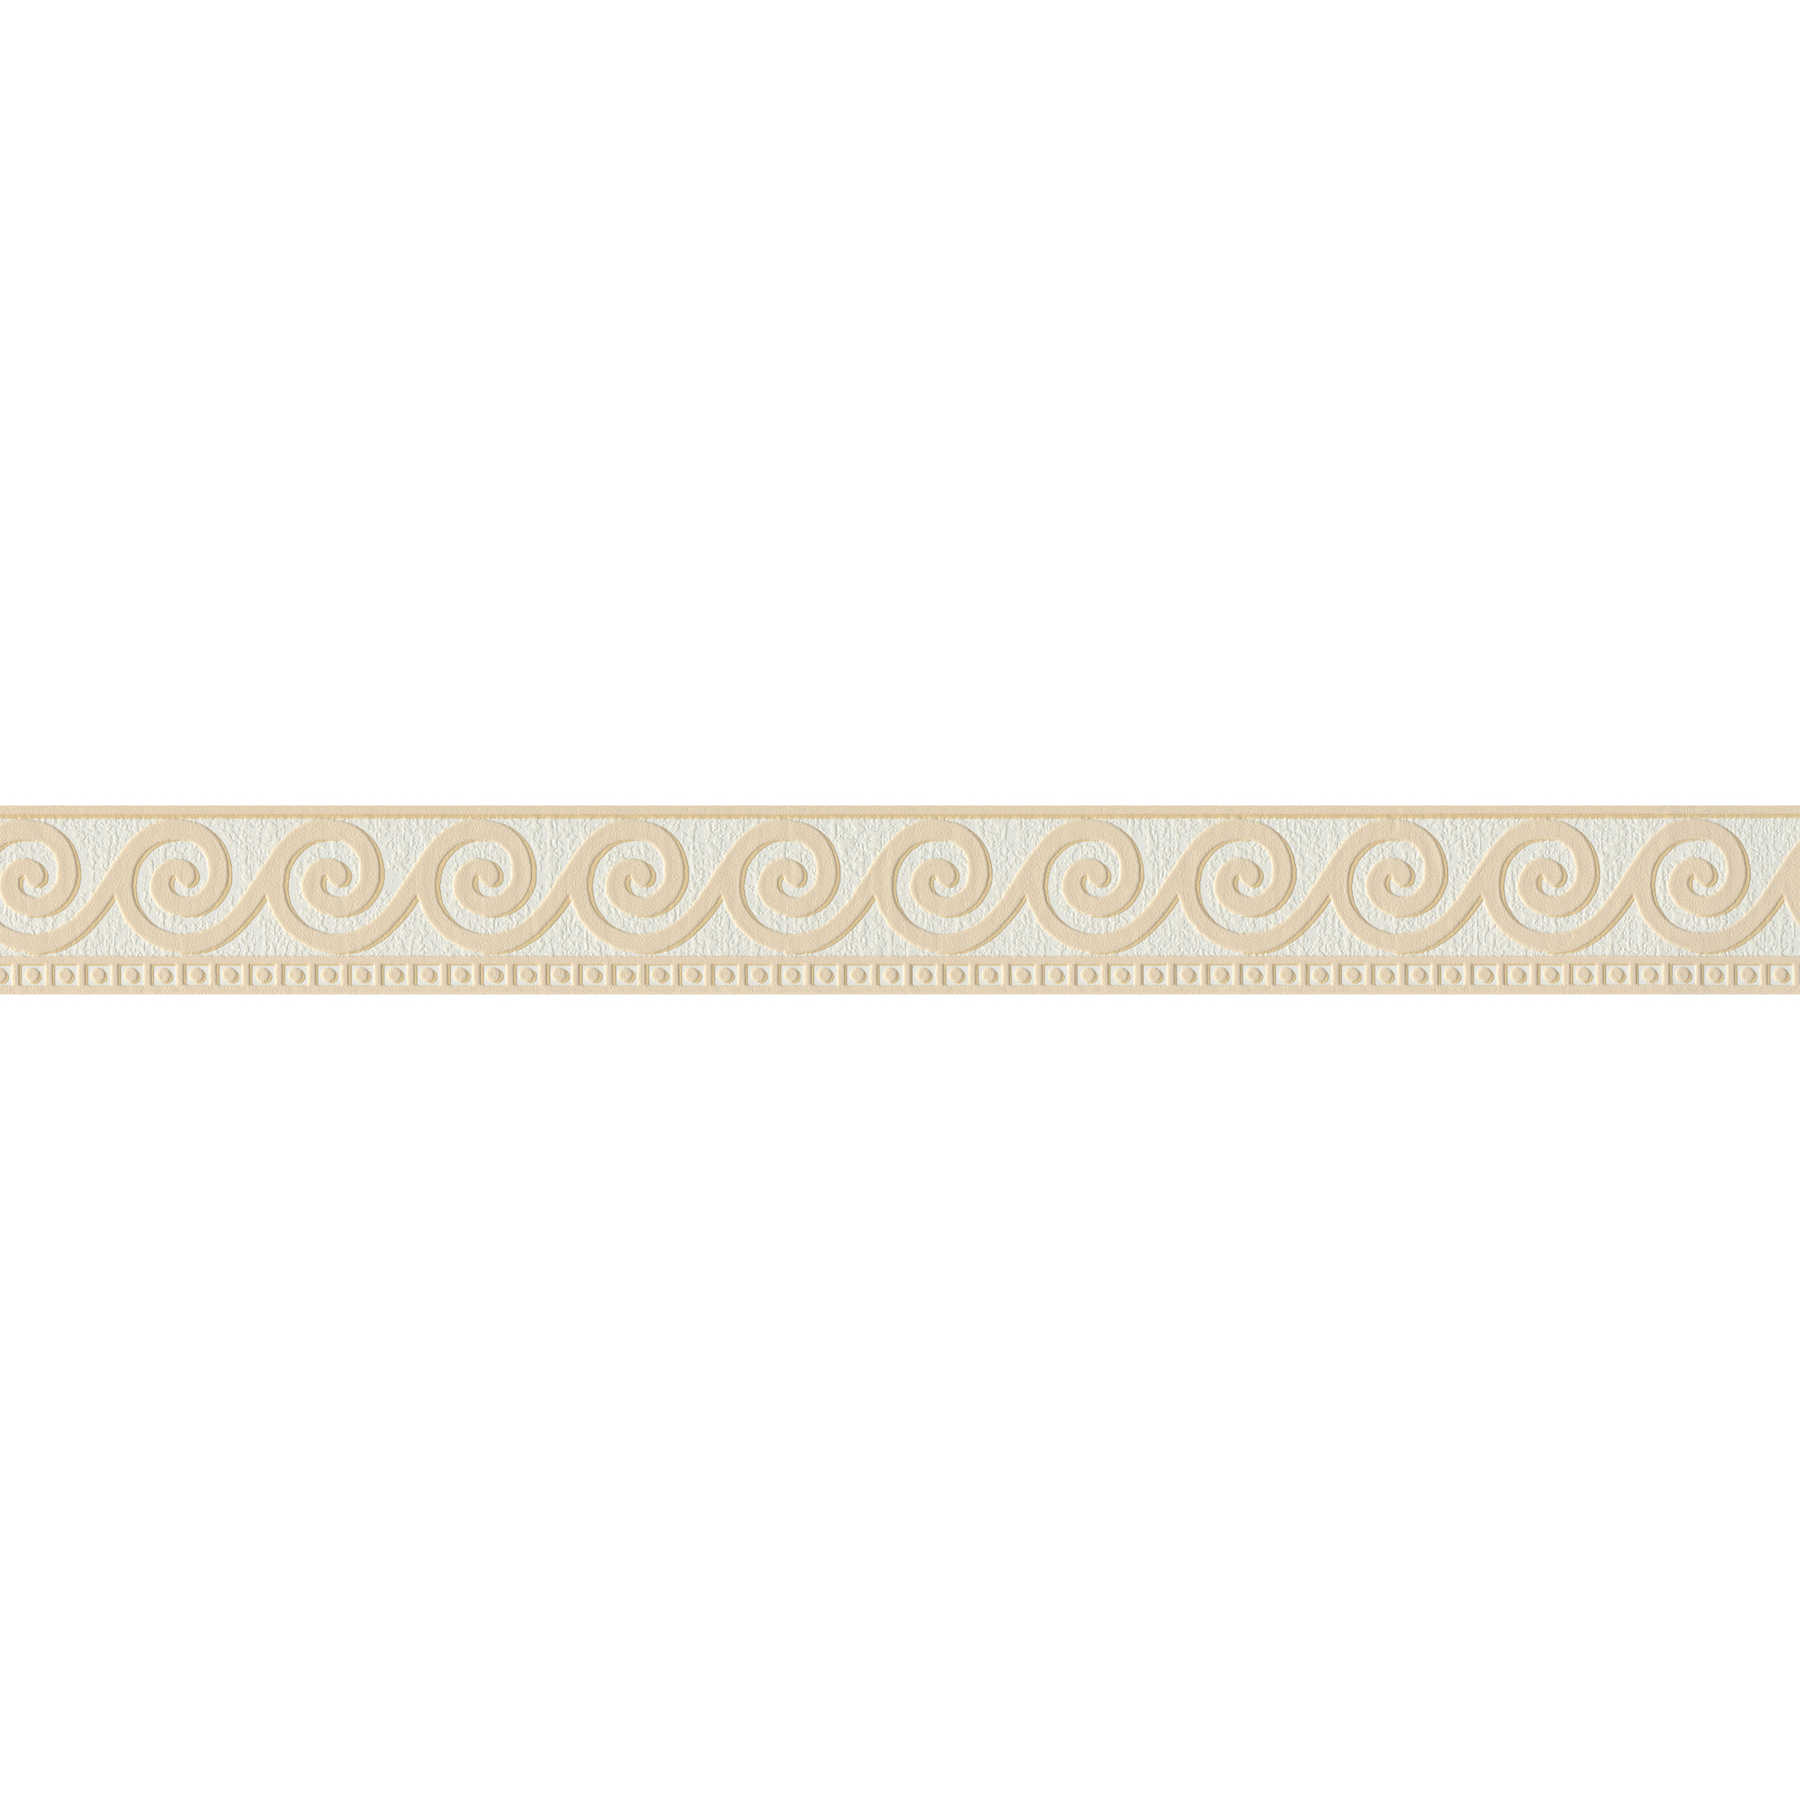 Bordure ornementale avec méandres à motifs structurés - beige, blanc
